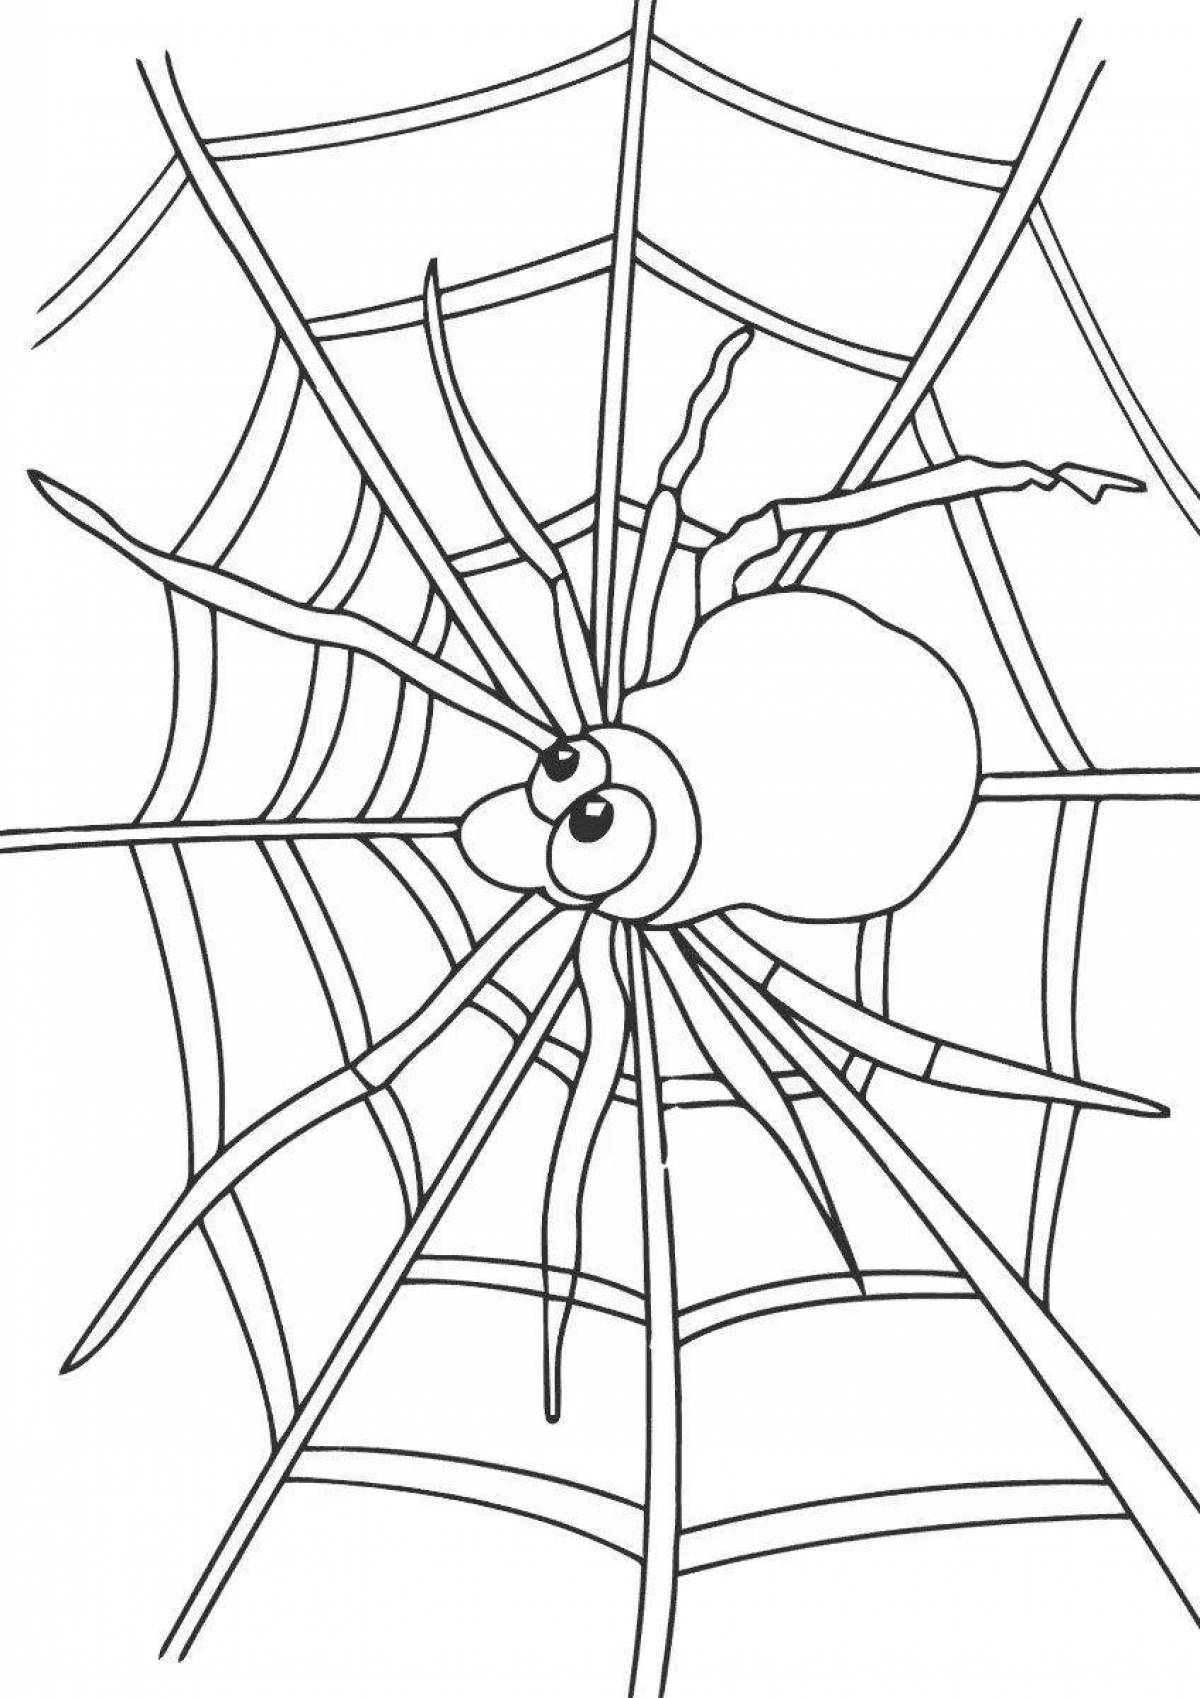 Красочный рисунок паука